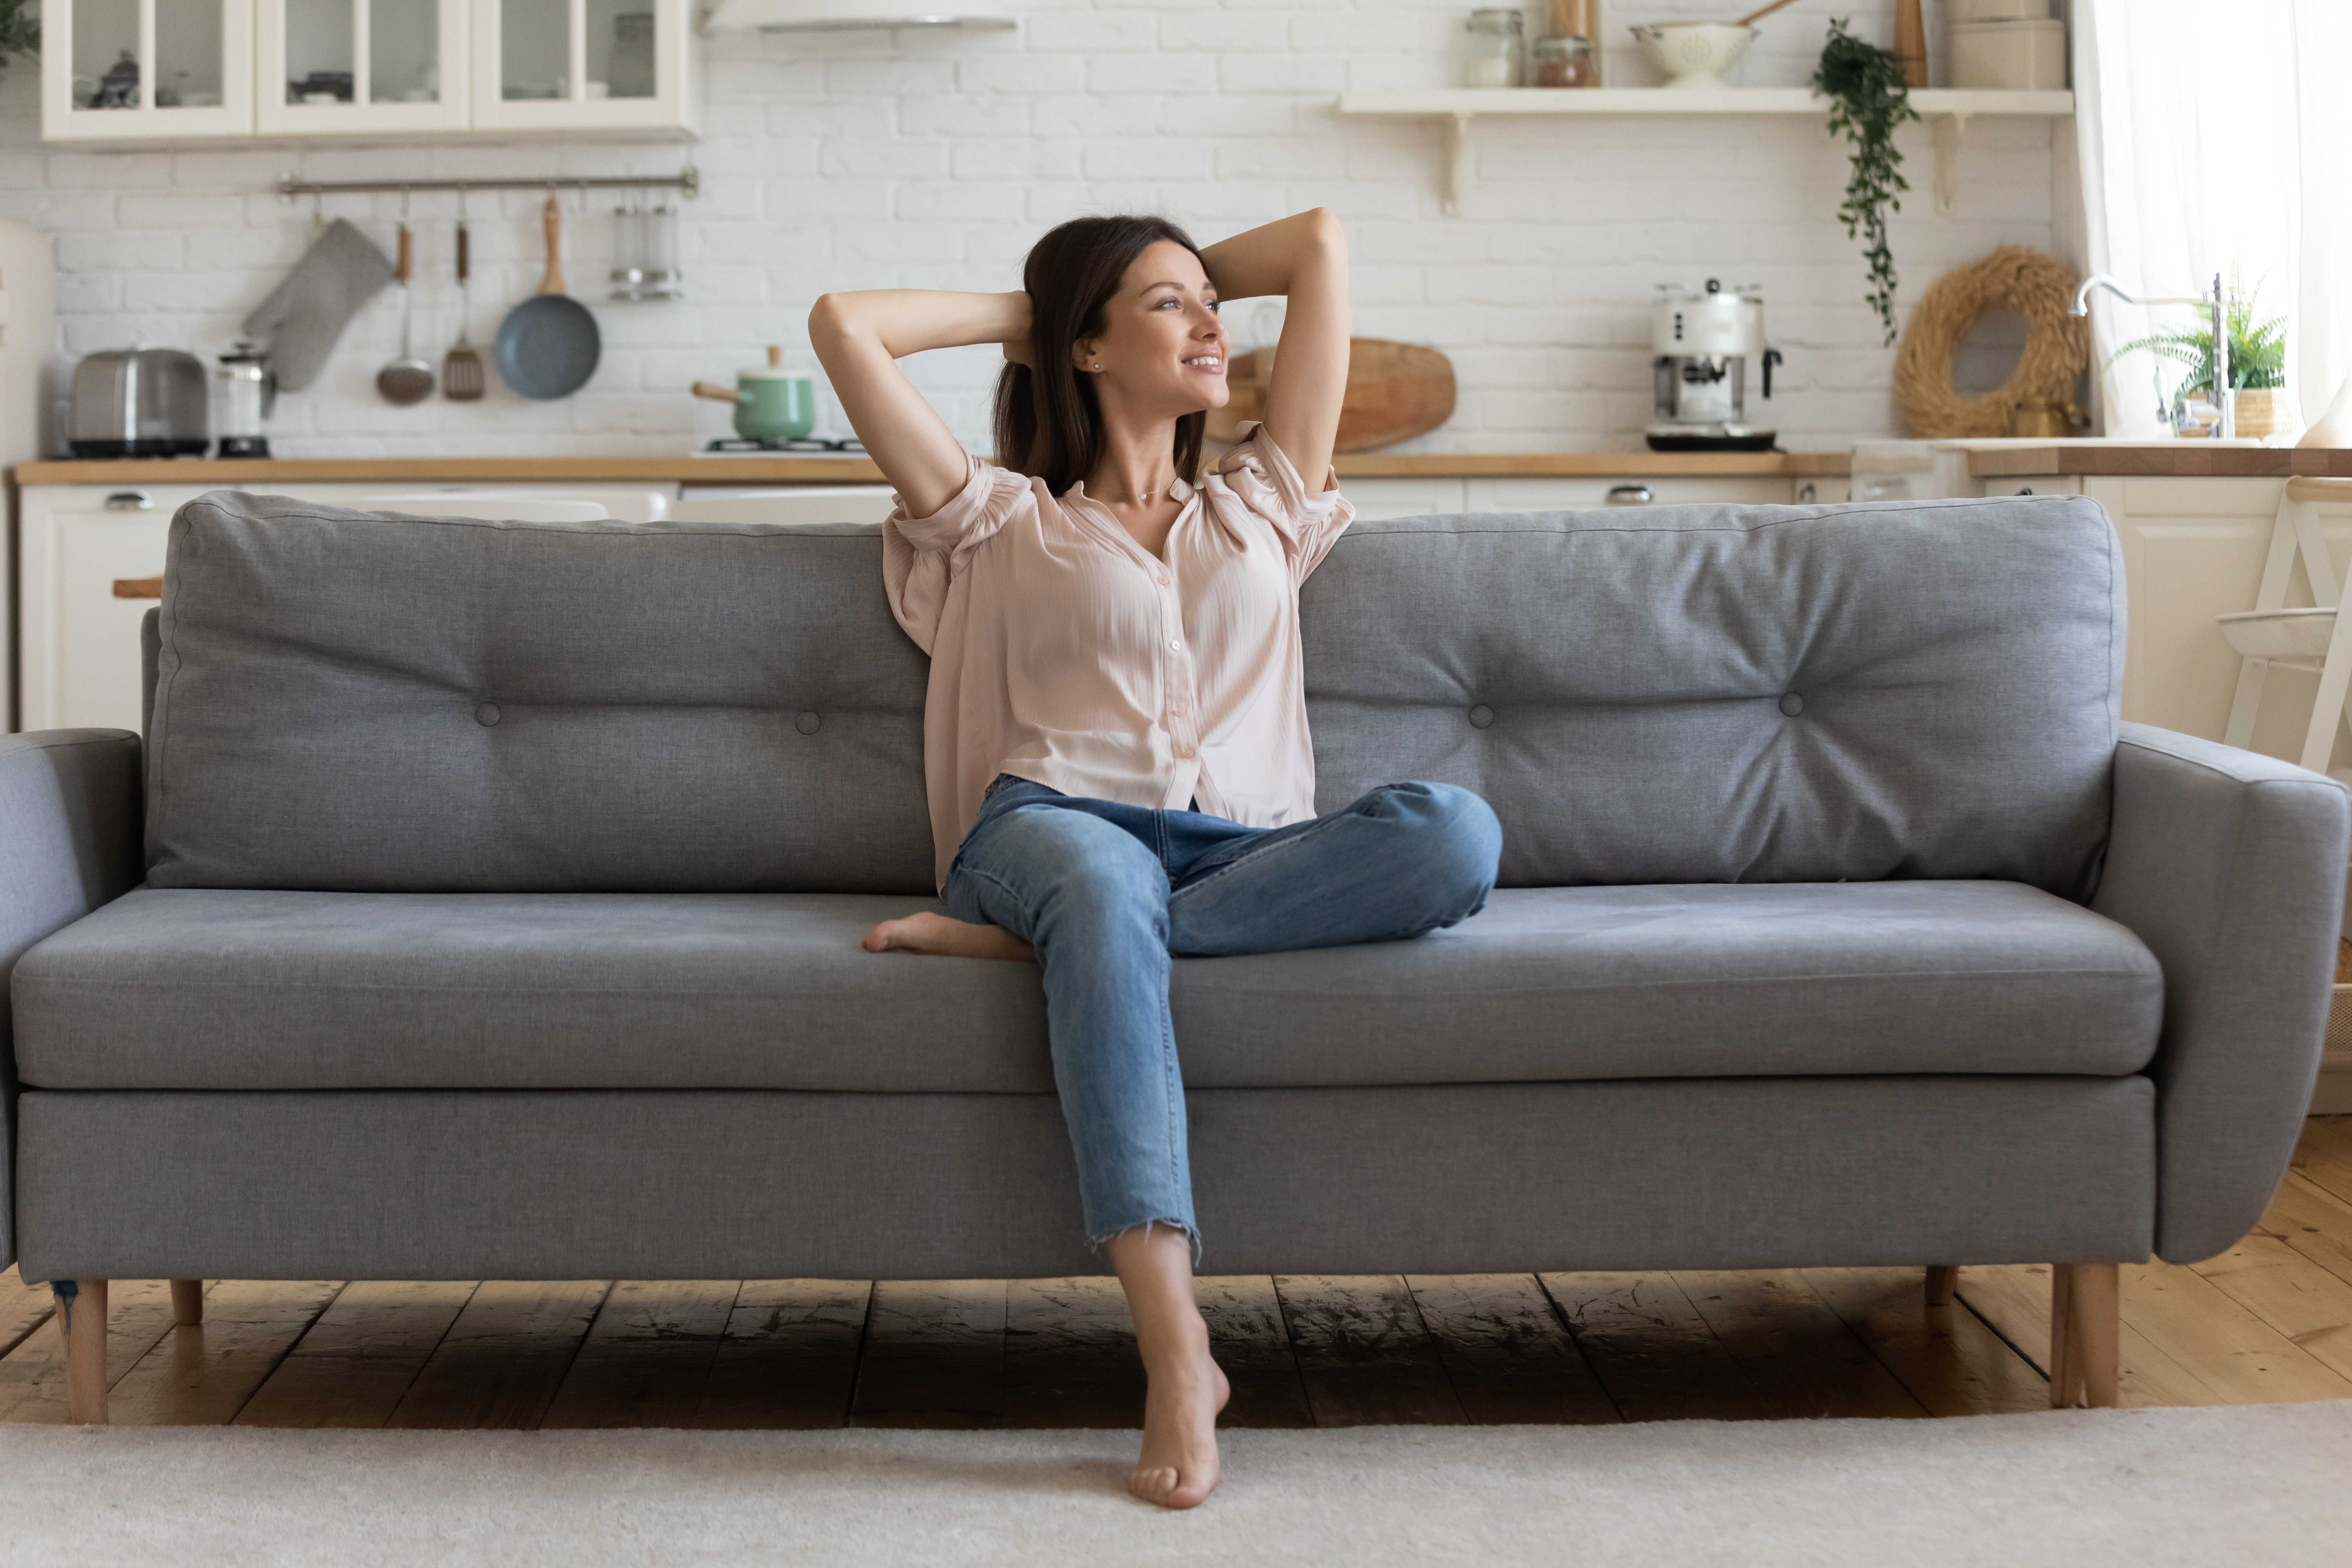 Une femme qui se détend sur le canapé | Source : Shutterstock